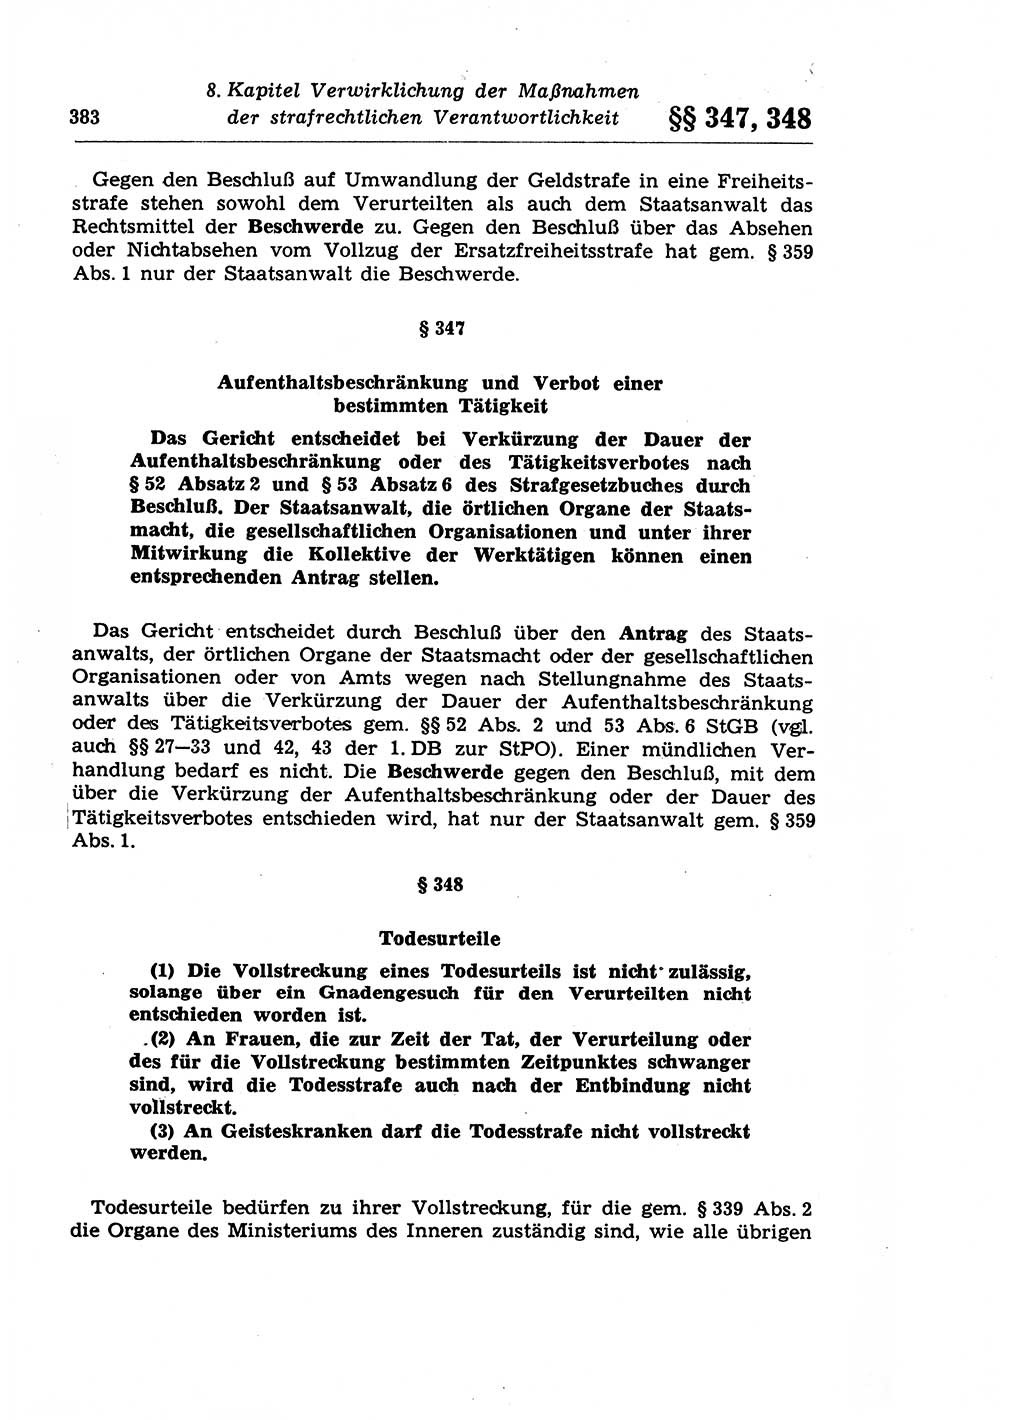 Strafprozeßrecht der DDR (Deutsche Demokratische Republik), Lehrkommentar zur Strafprozeßordnung (StPO) 1968, Seite 383 (Strafprozeßr. DDR Lehrkomm. StPO 19688, S. 383)